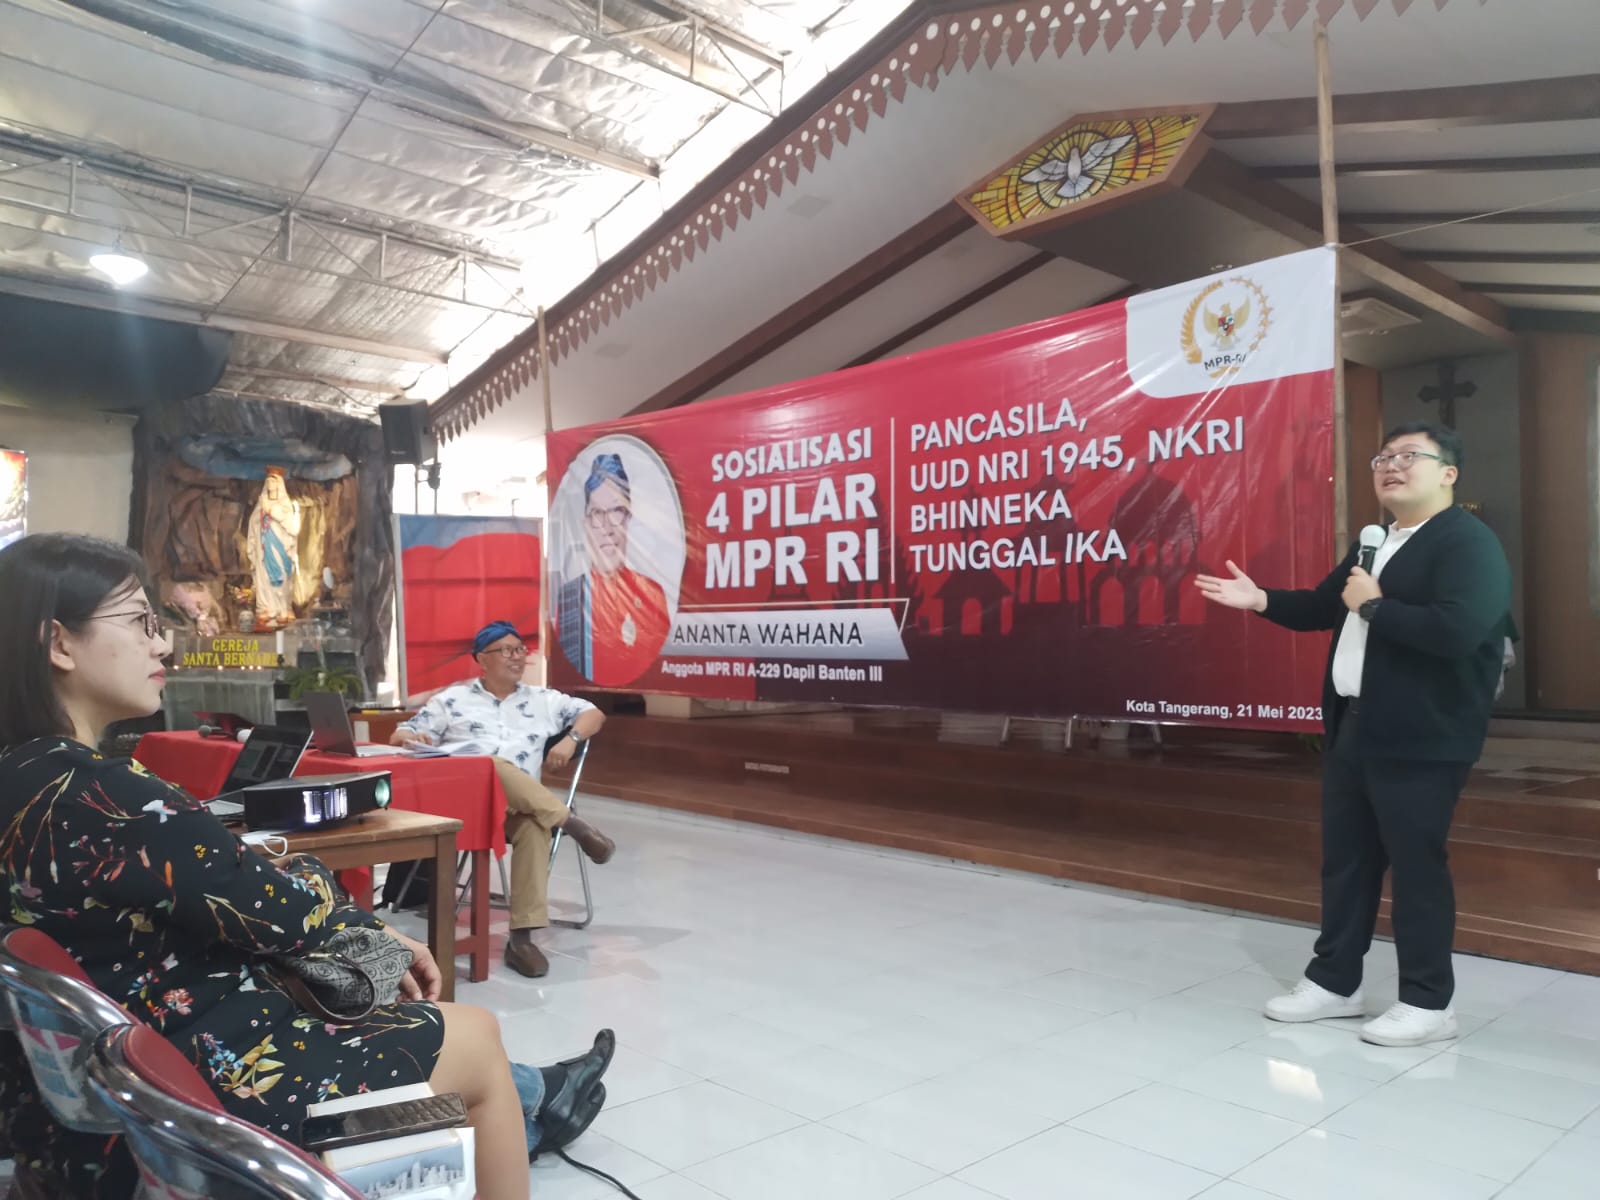 Direktur Karang Tumaritis Institute, Abraham Garuda Laksono memberikan pemahaman Pancasila kepada umat Katolik di acara Sosialisasi 4 Pilar MPR RI di ruang serba guna Santa Bernadet, Kecamatan Pinang, Kota Tangerang, Banten.